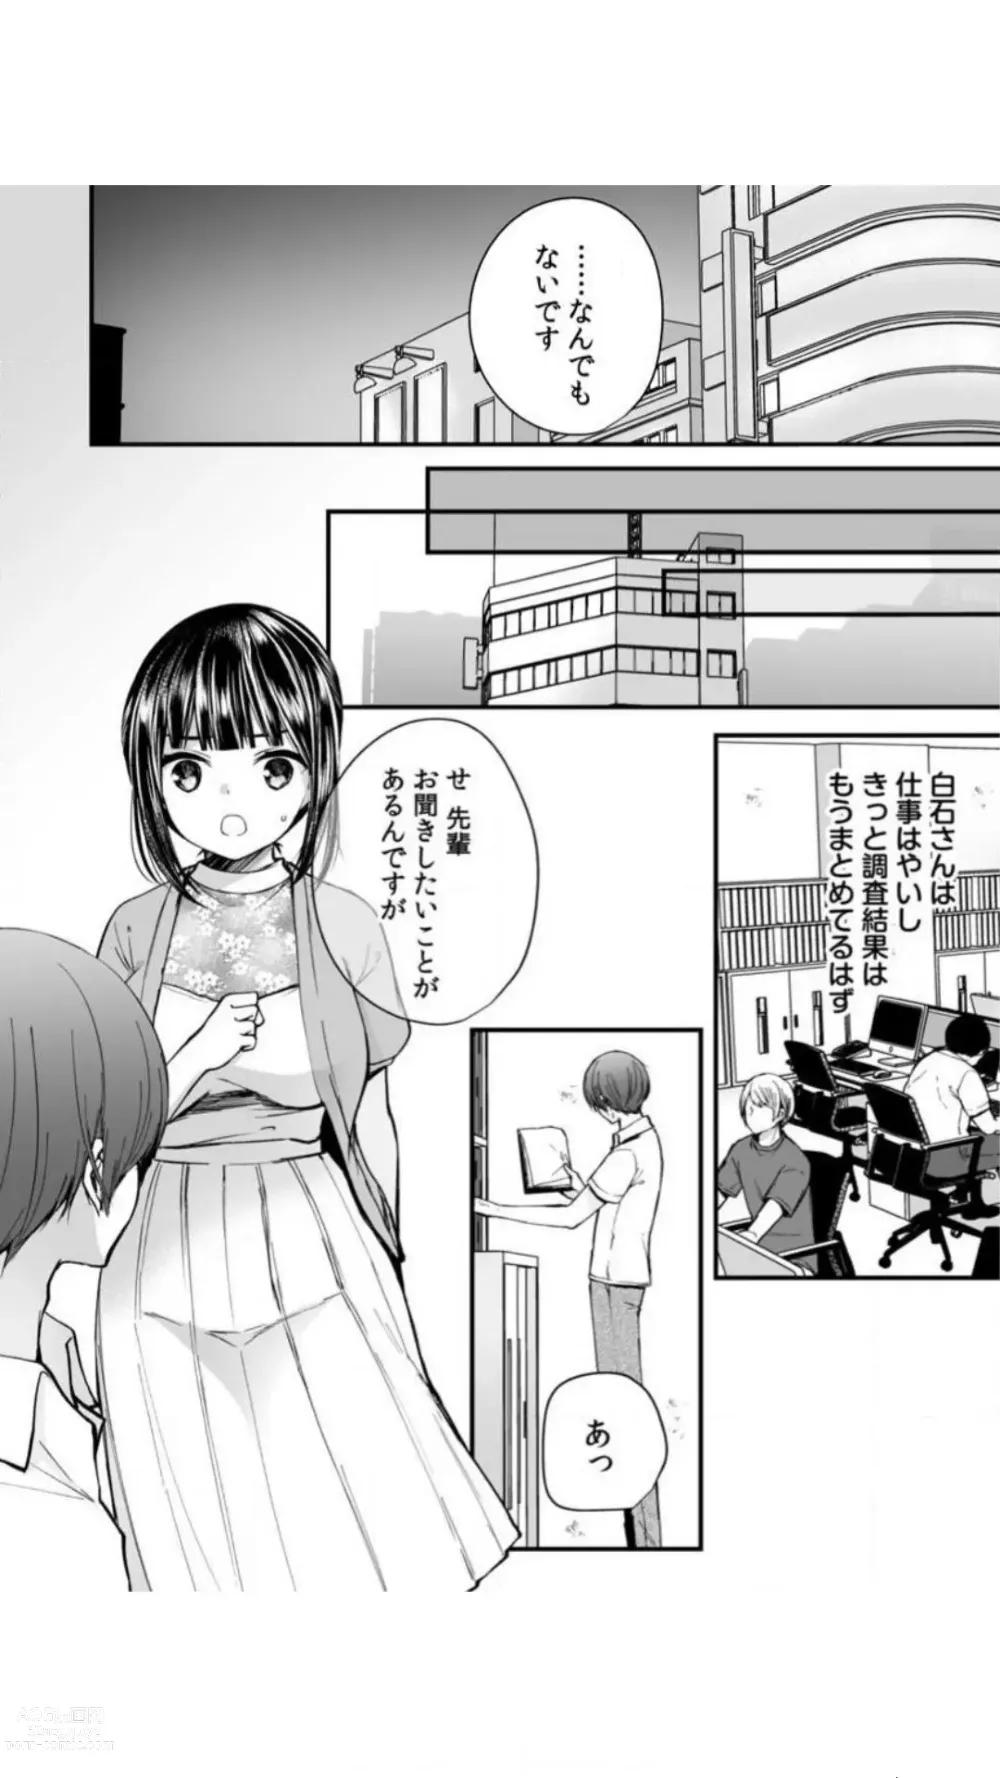 Page 98 of manga Ikasare Sugite Chousa Muri... Sennyuu! Uwasa no Kaikan Massage-ten